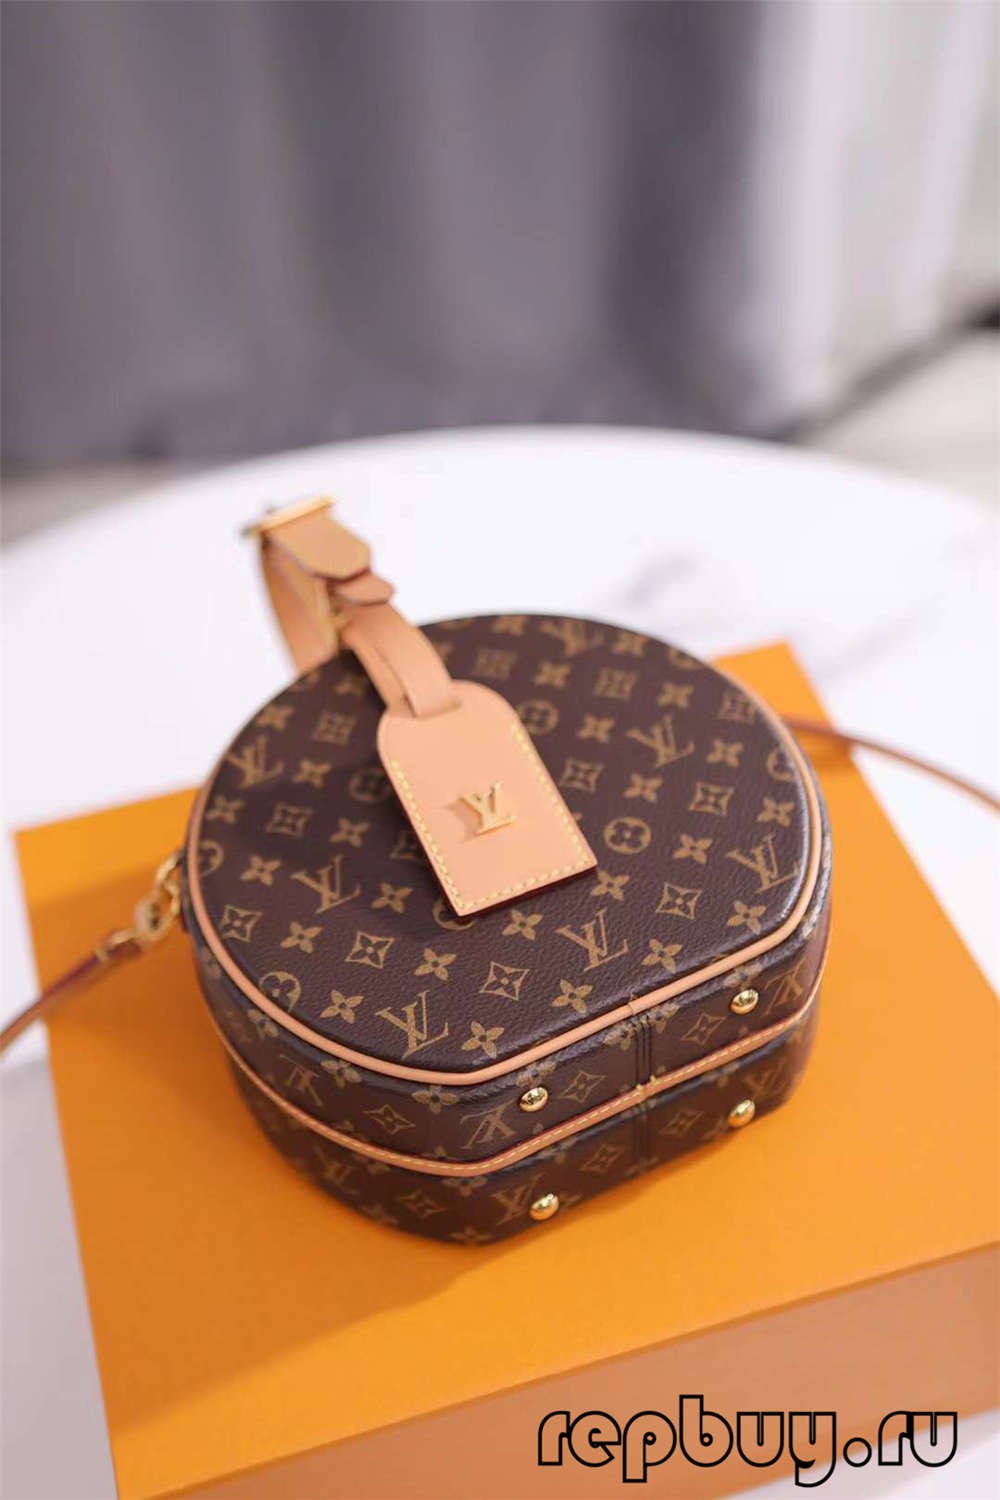 ሉዊስ Vuitton M43514 PETITE BOITE CHAPEAU 17.5 ሴሜ ከፍተኛ ቅጂ ቦርሳዎች የሃርድዌር እና የእደ ጥበብ ዝርዝሮች (2022 እትም)-Best Quality Fake Louis Vuitton Bag Online Store, Replica designer bag ru